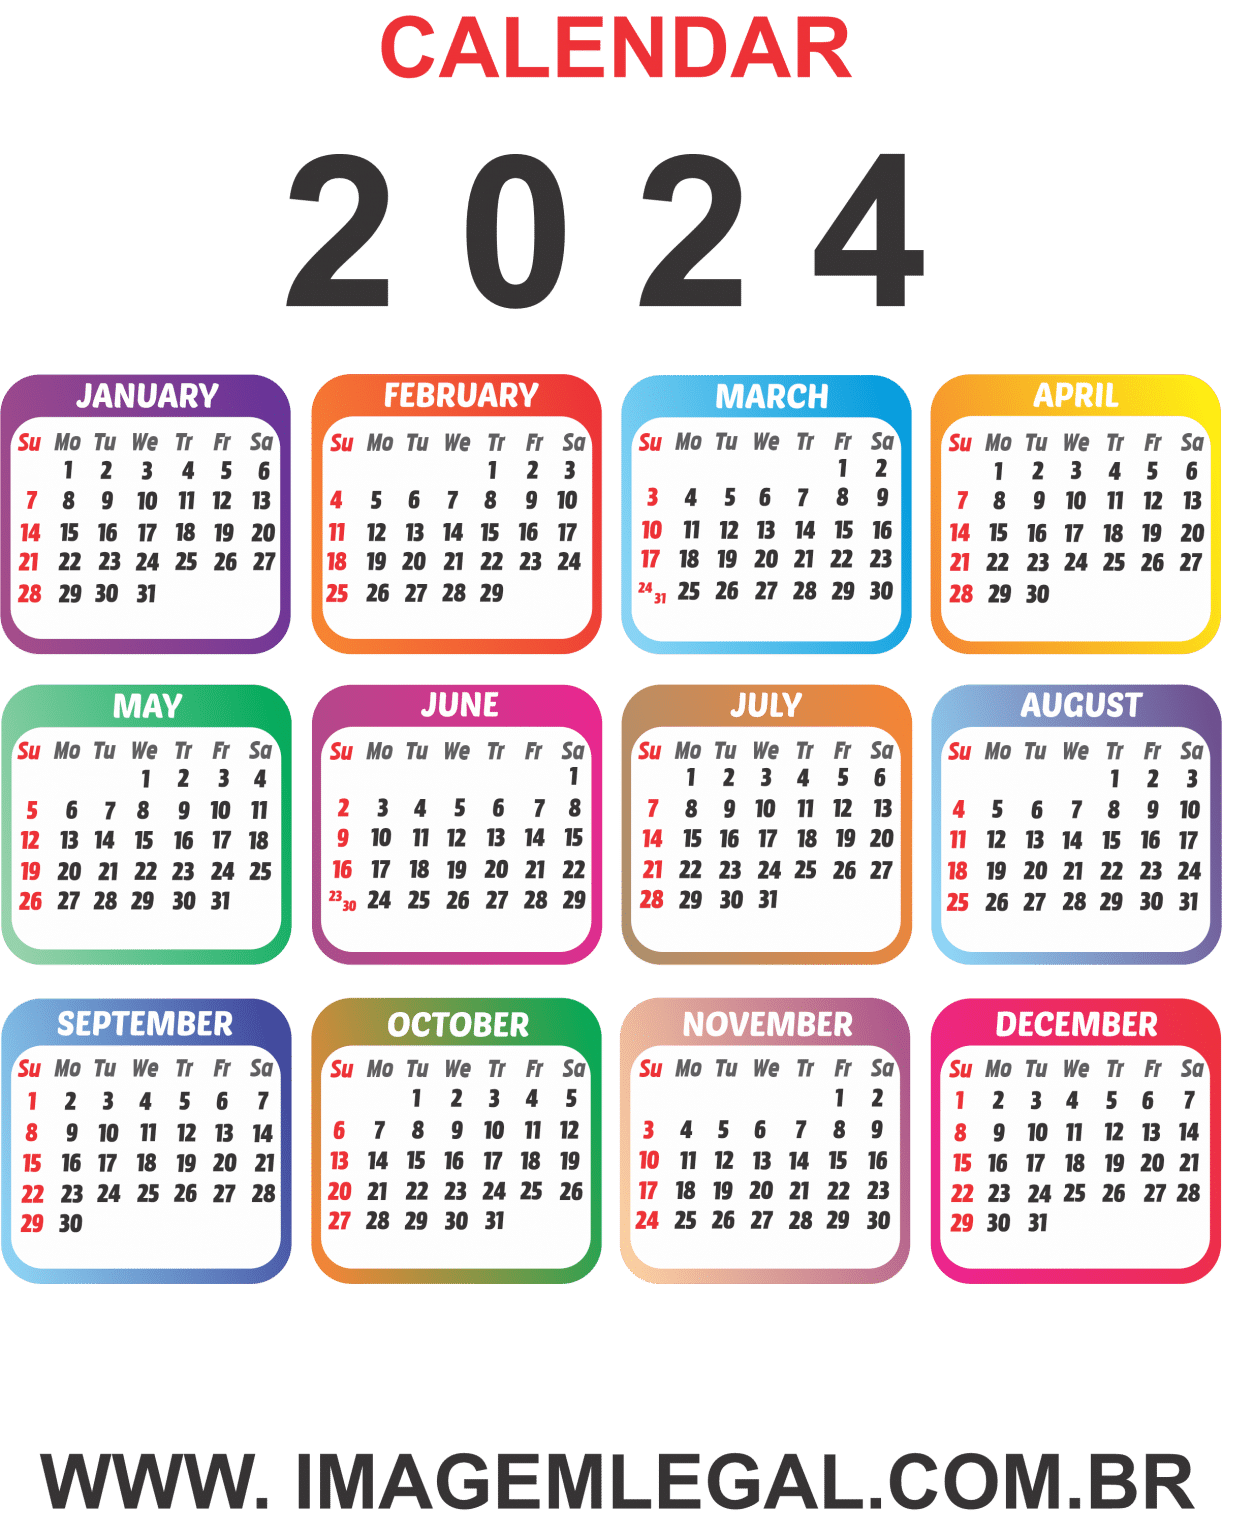 2024 Calendar Color English Imagem Legal